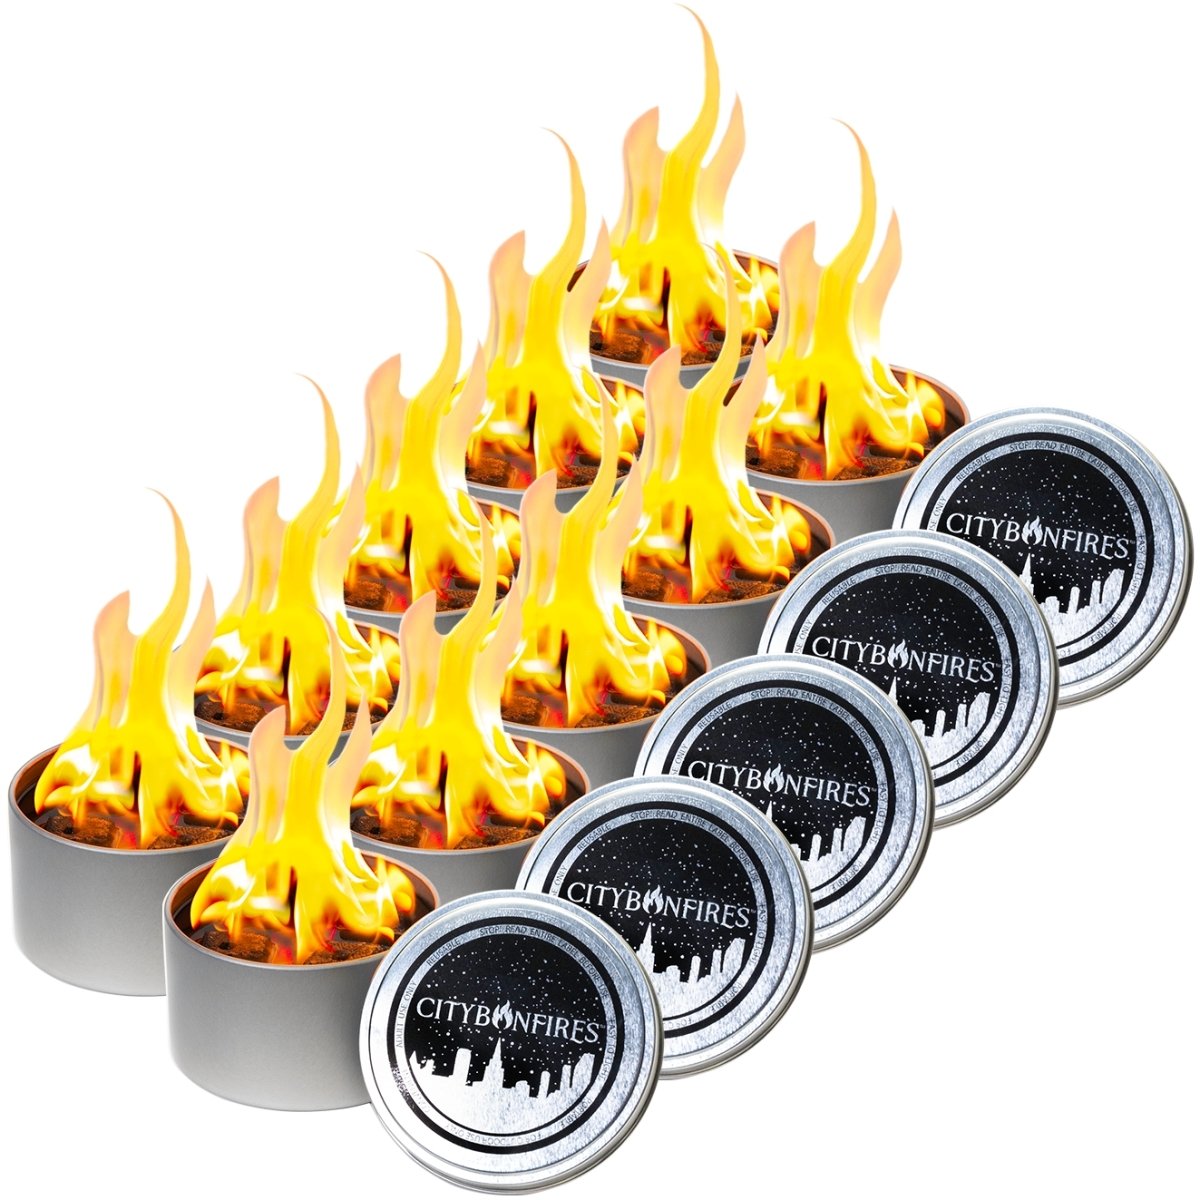 https://citybonfires.com/cdn/shop/products/city-bonfire-10-pack-696800.jpg?v=1696514468&width=1200